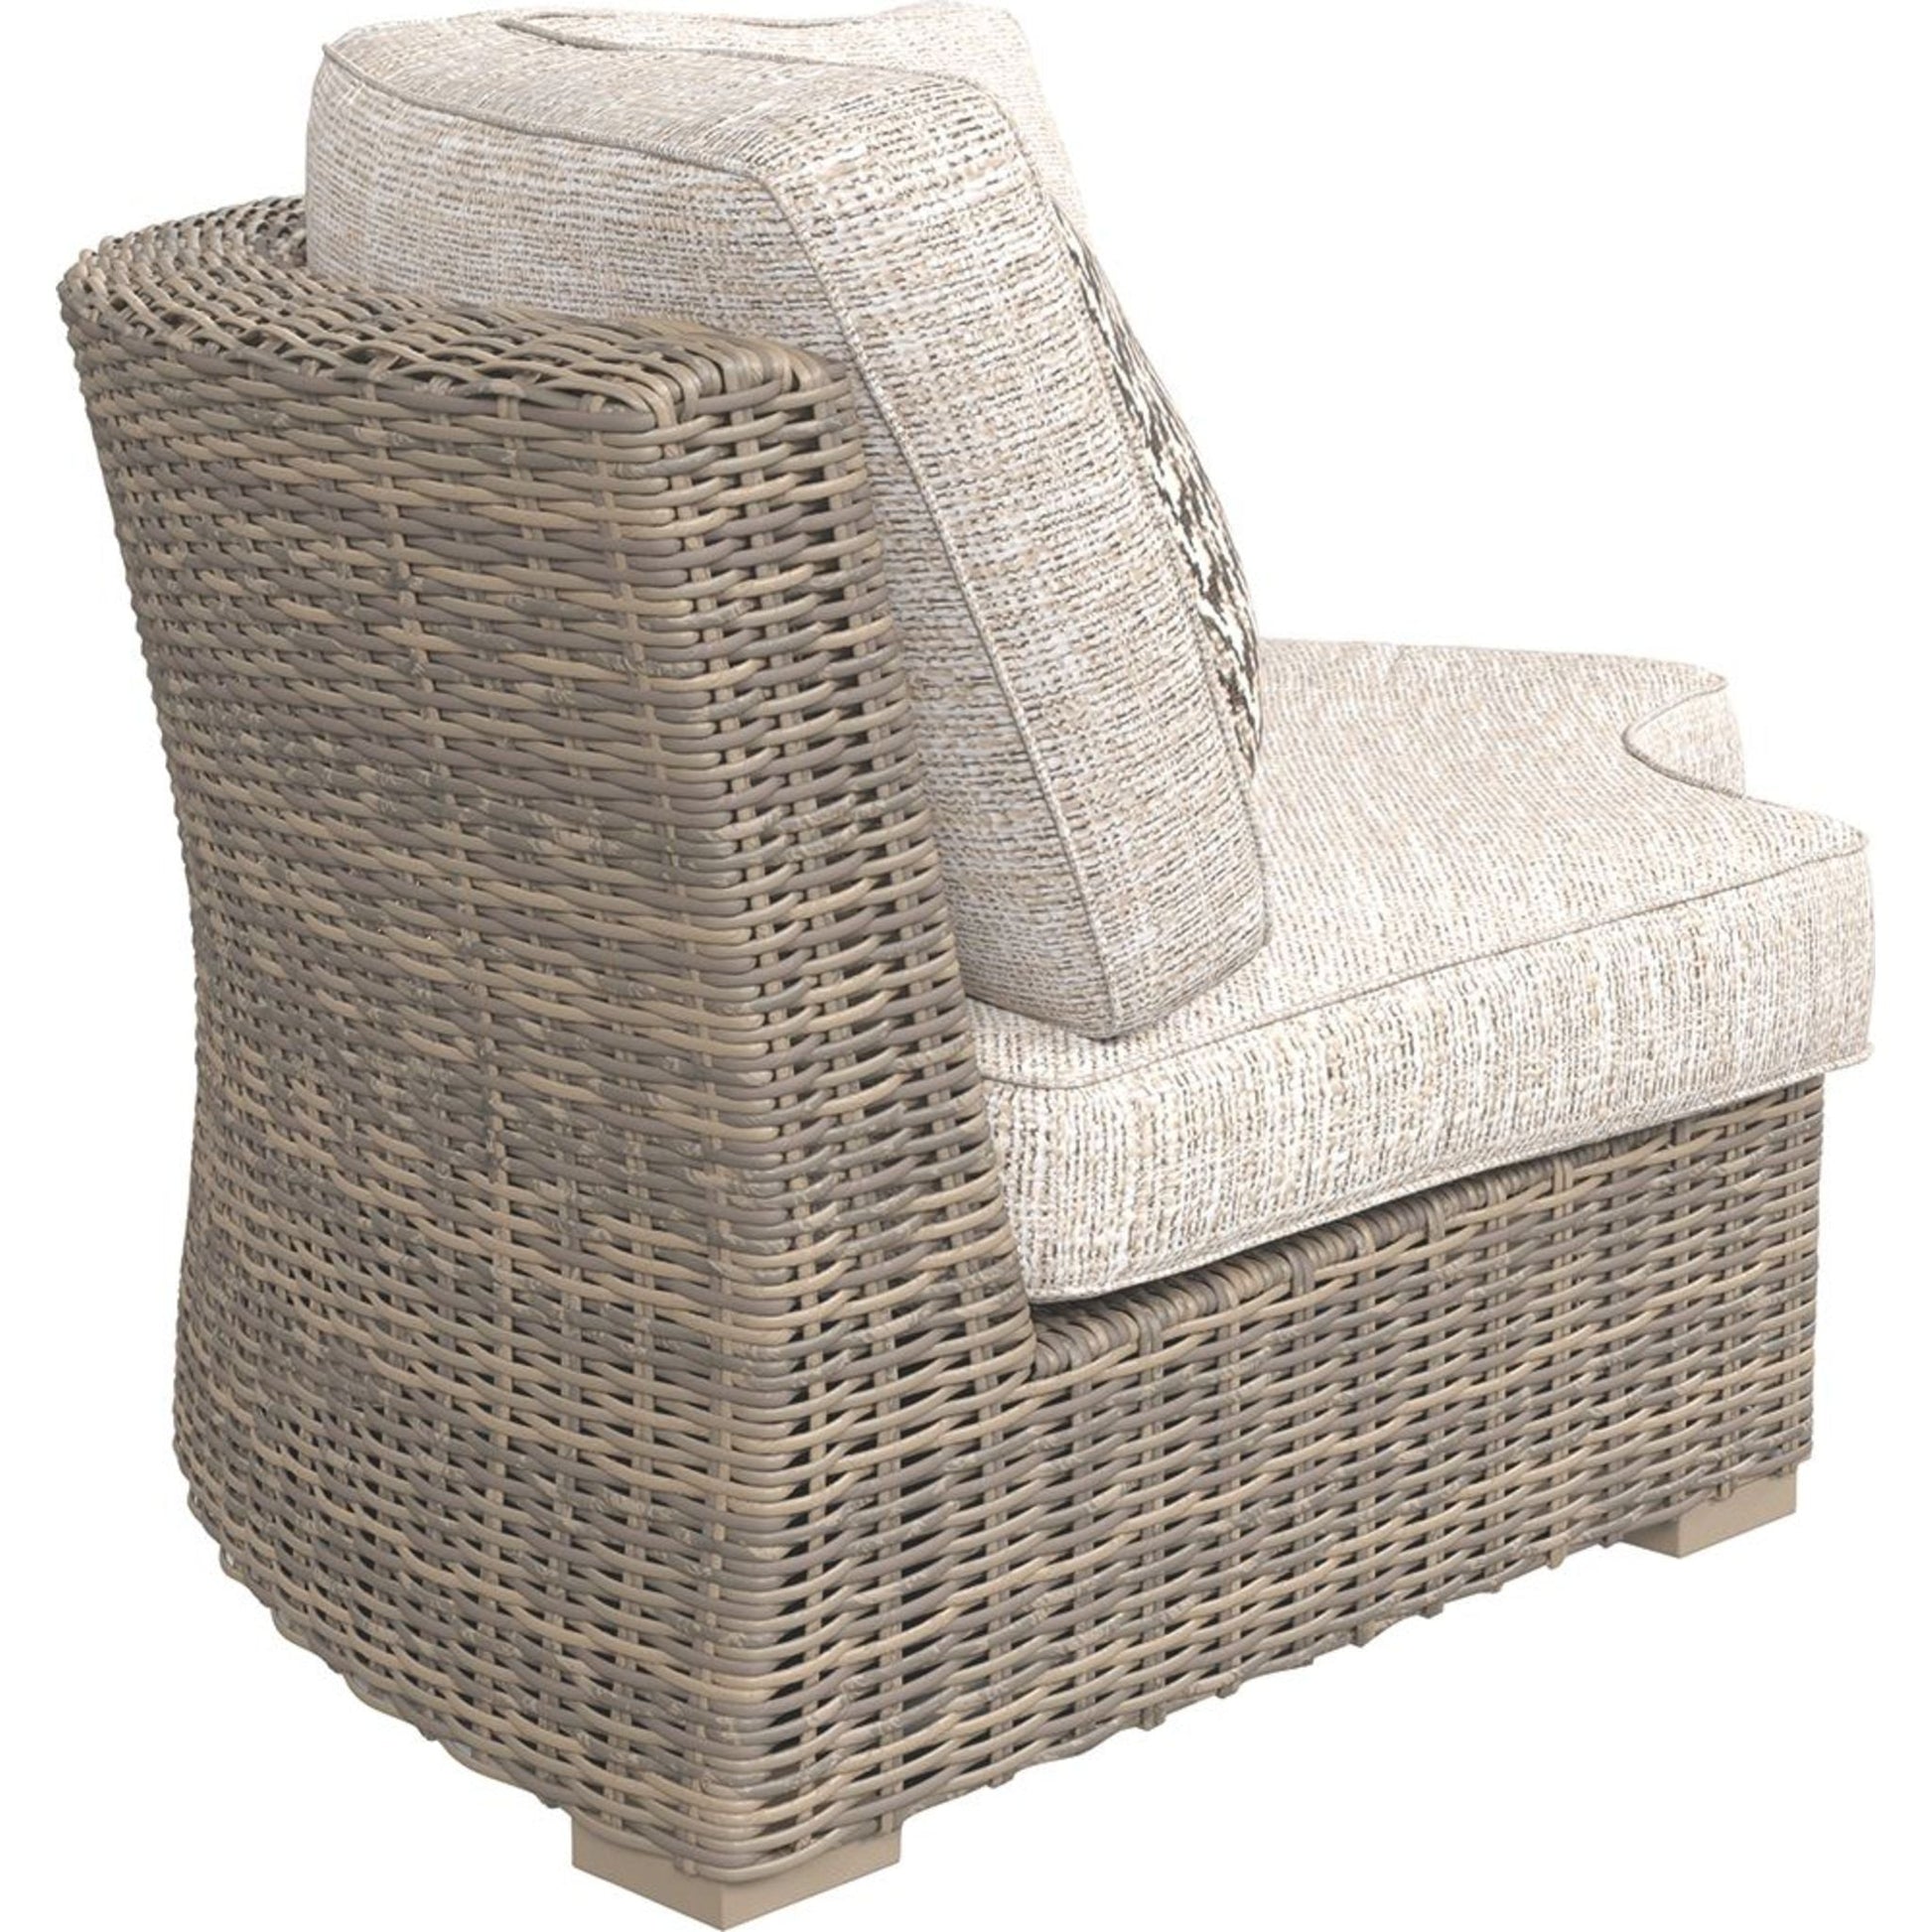 Outdoor Beachcroft Collection Corner Chair White/Beige